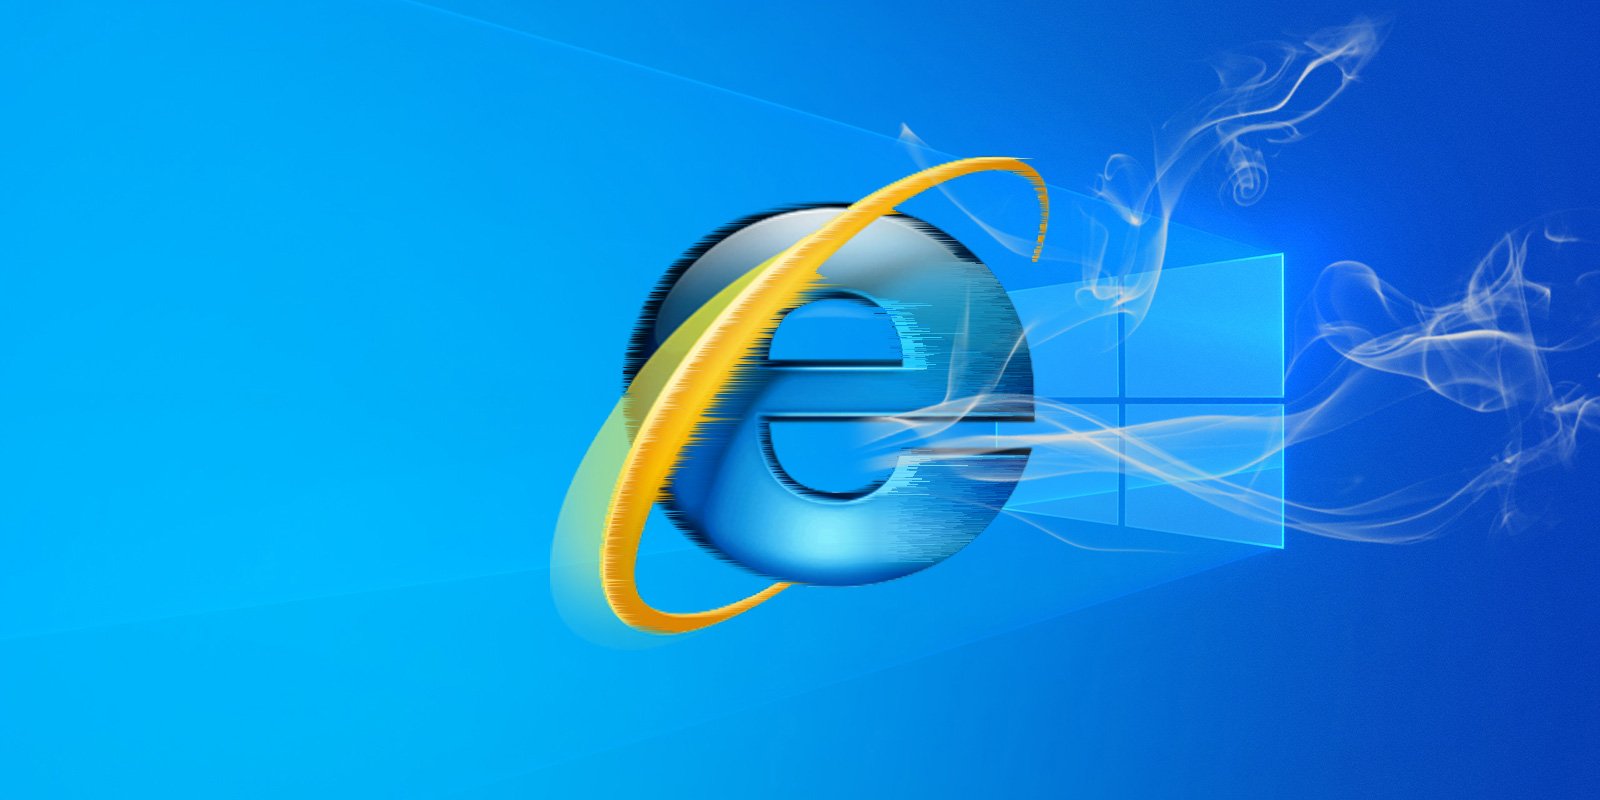 Internet Explorer pasa a mejor vida con Windows 11